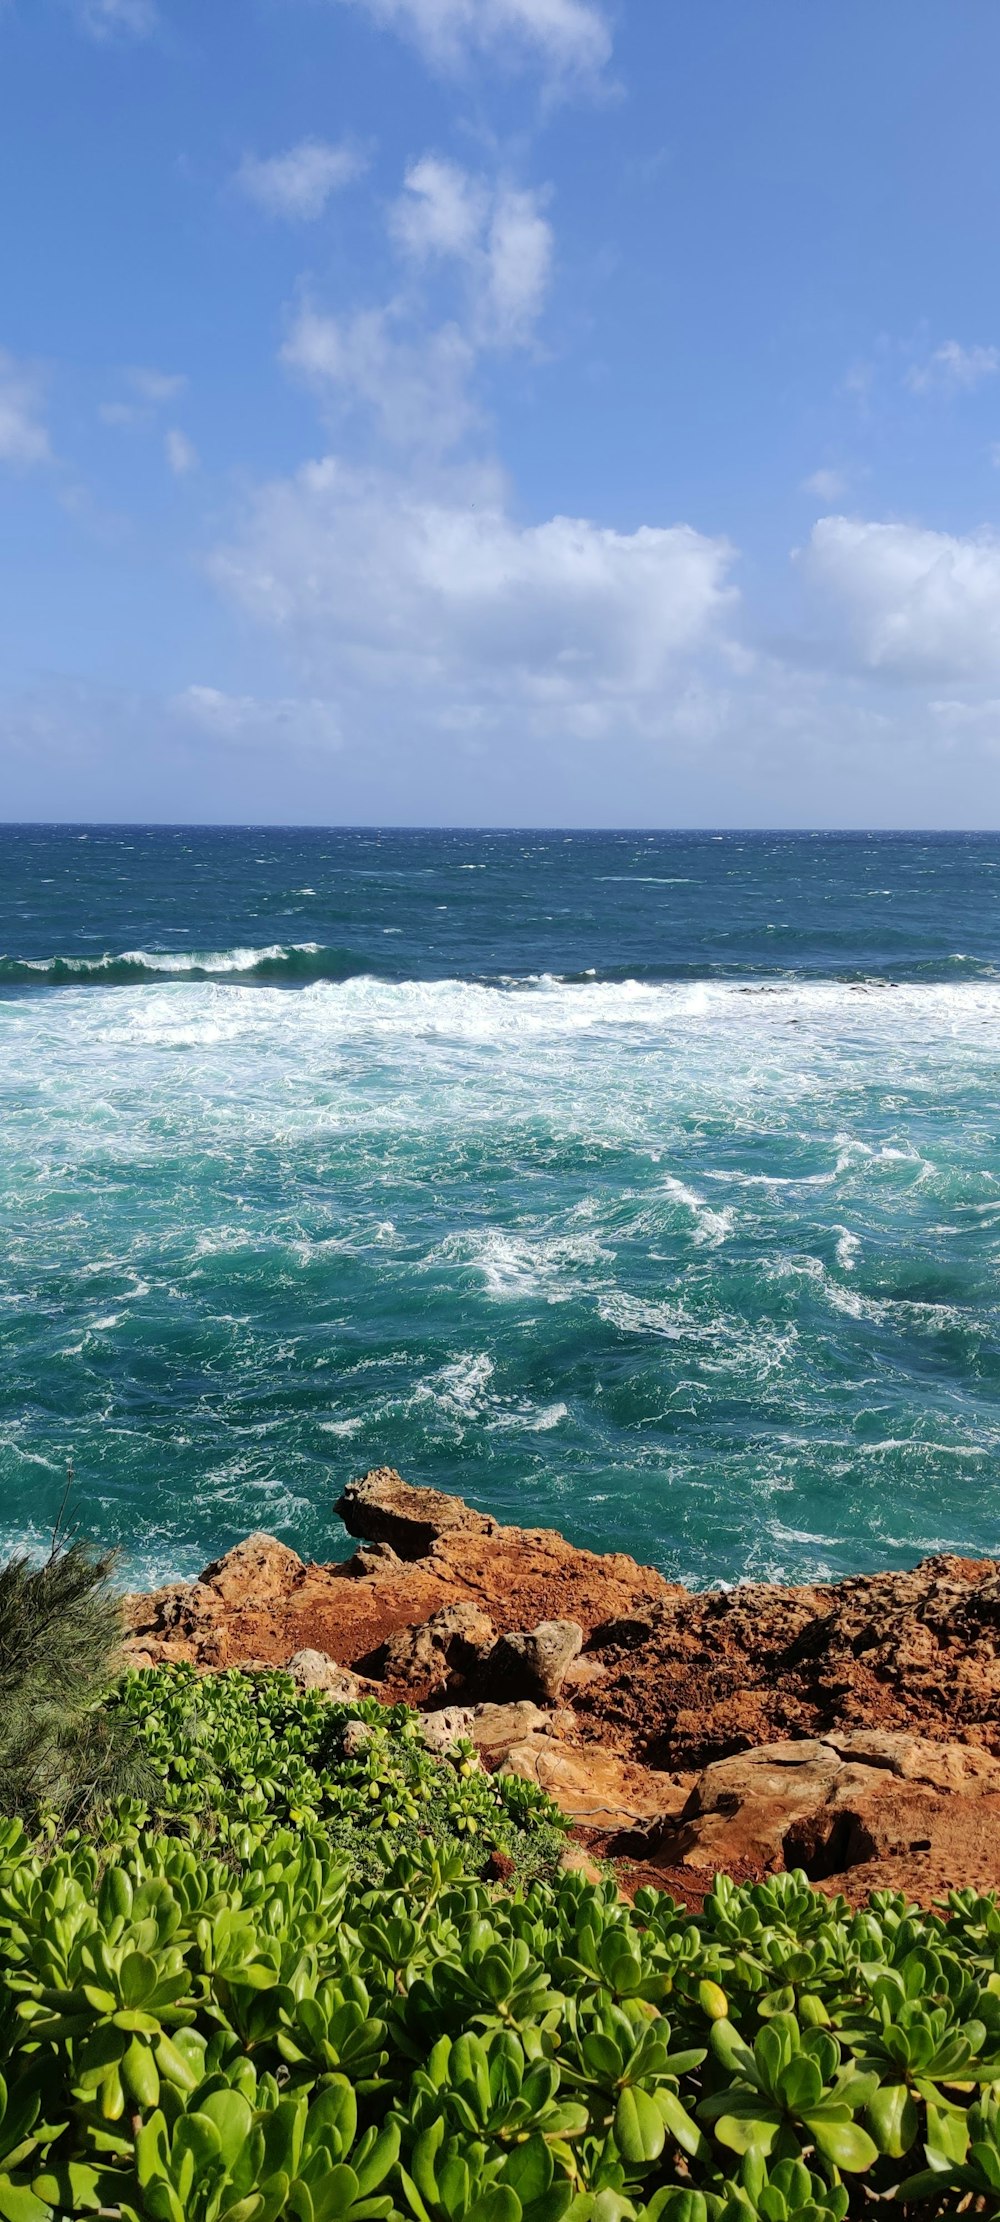 Les vagues de l’océan s’écrasent sur le rivage rocheux brun pendant la journée